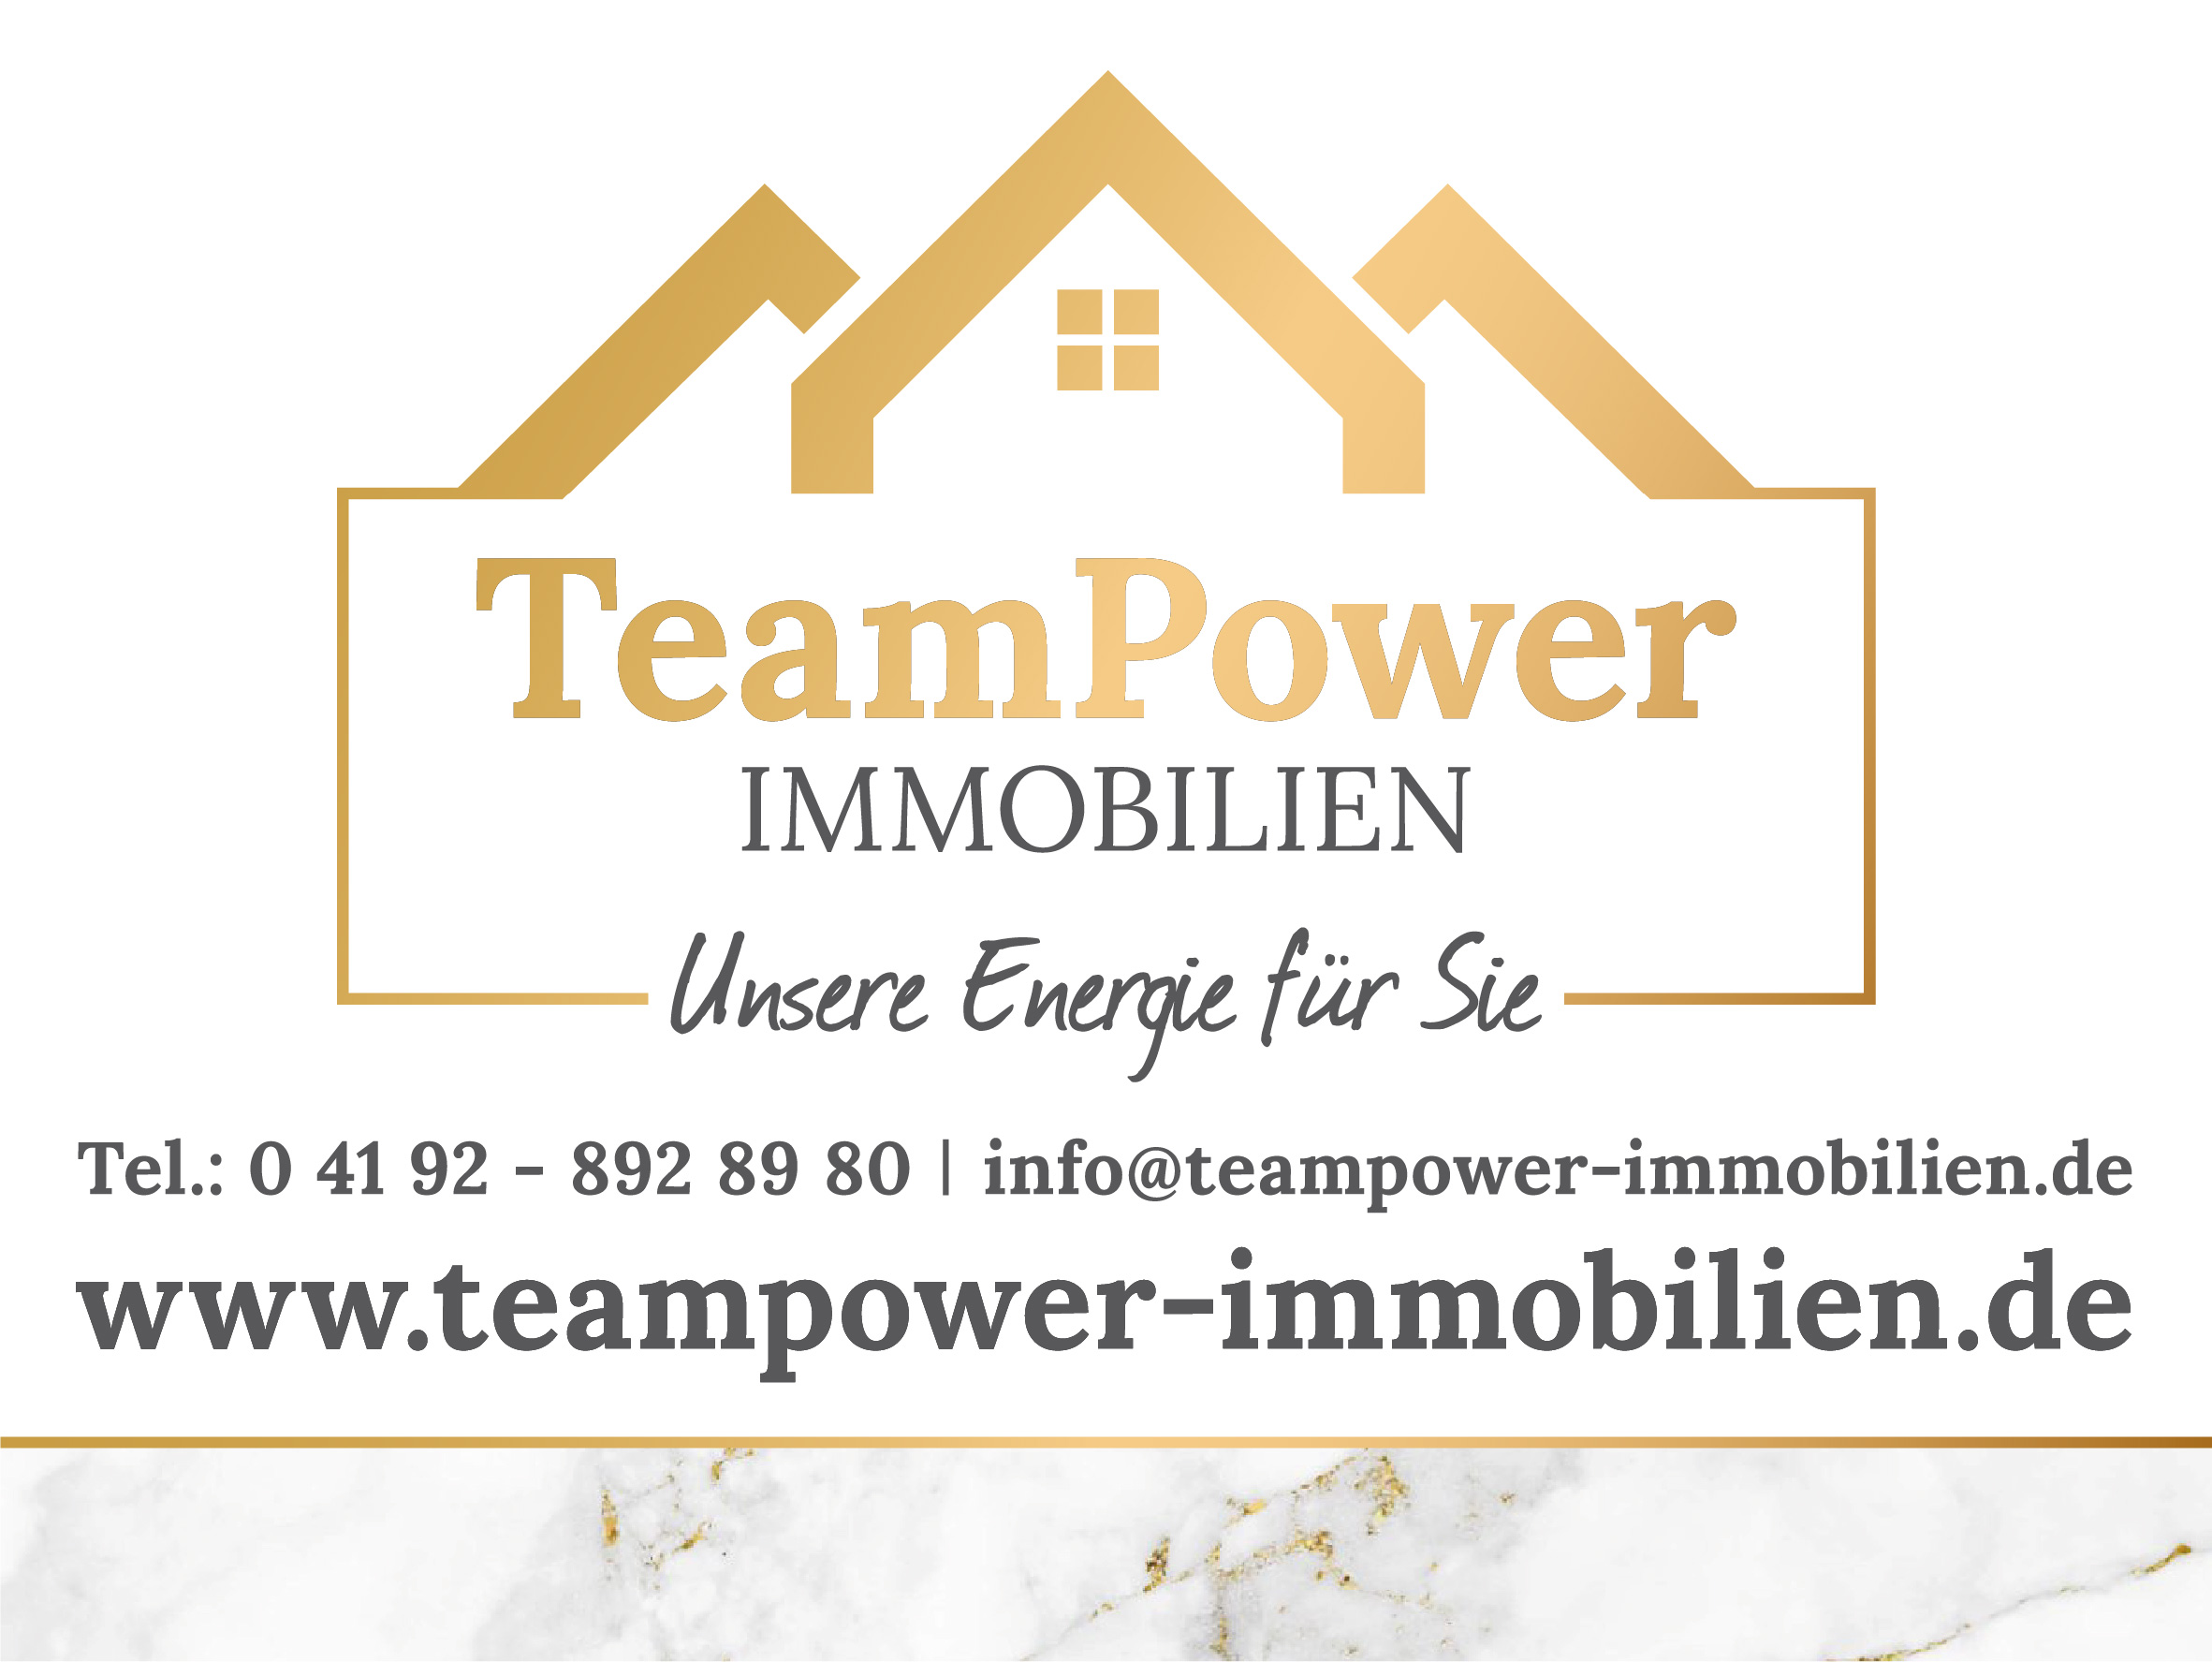 Bild 1 TeamPower Immobilien GmbH in Bad Bramstedt